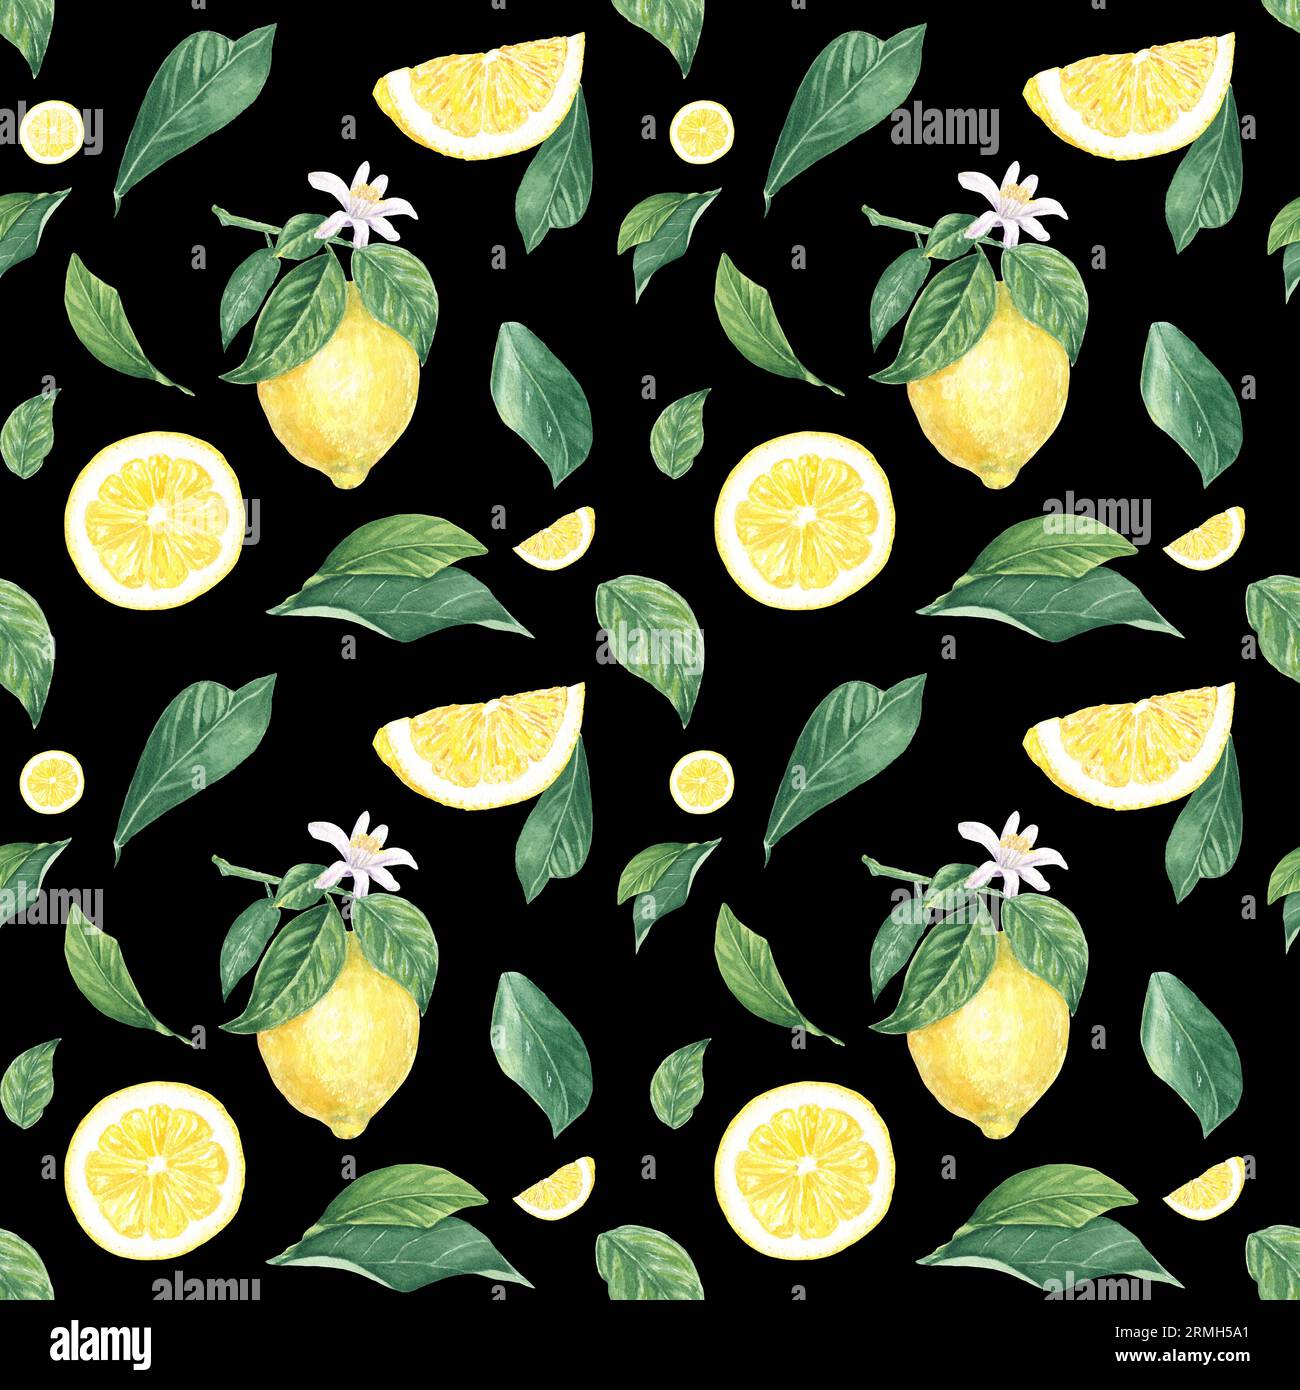 Acquerello senza cuciture limone, fette, fiore, foglie su sfondo nero, dipinto a mano in stile botanico, per le vacanze, matrimonio, food design Foto Stock